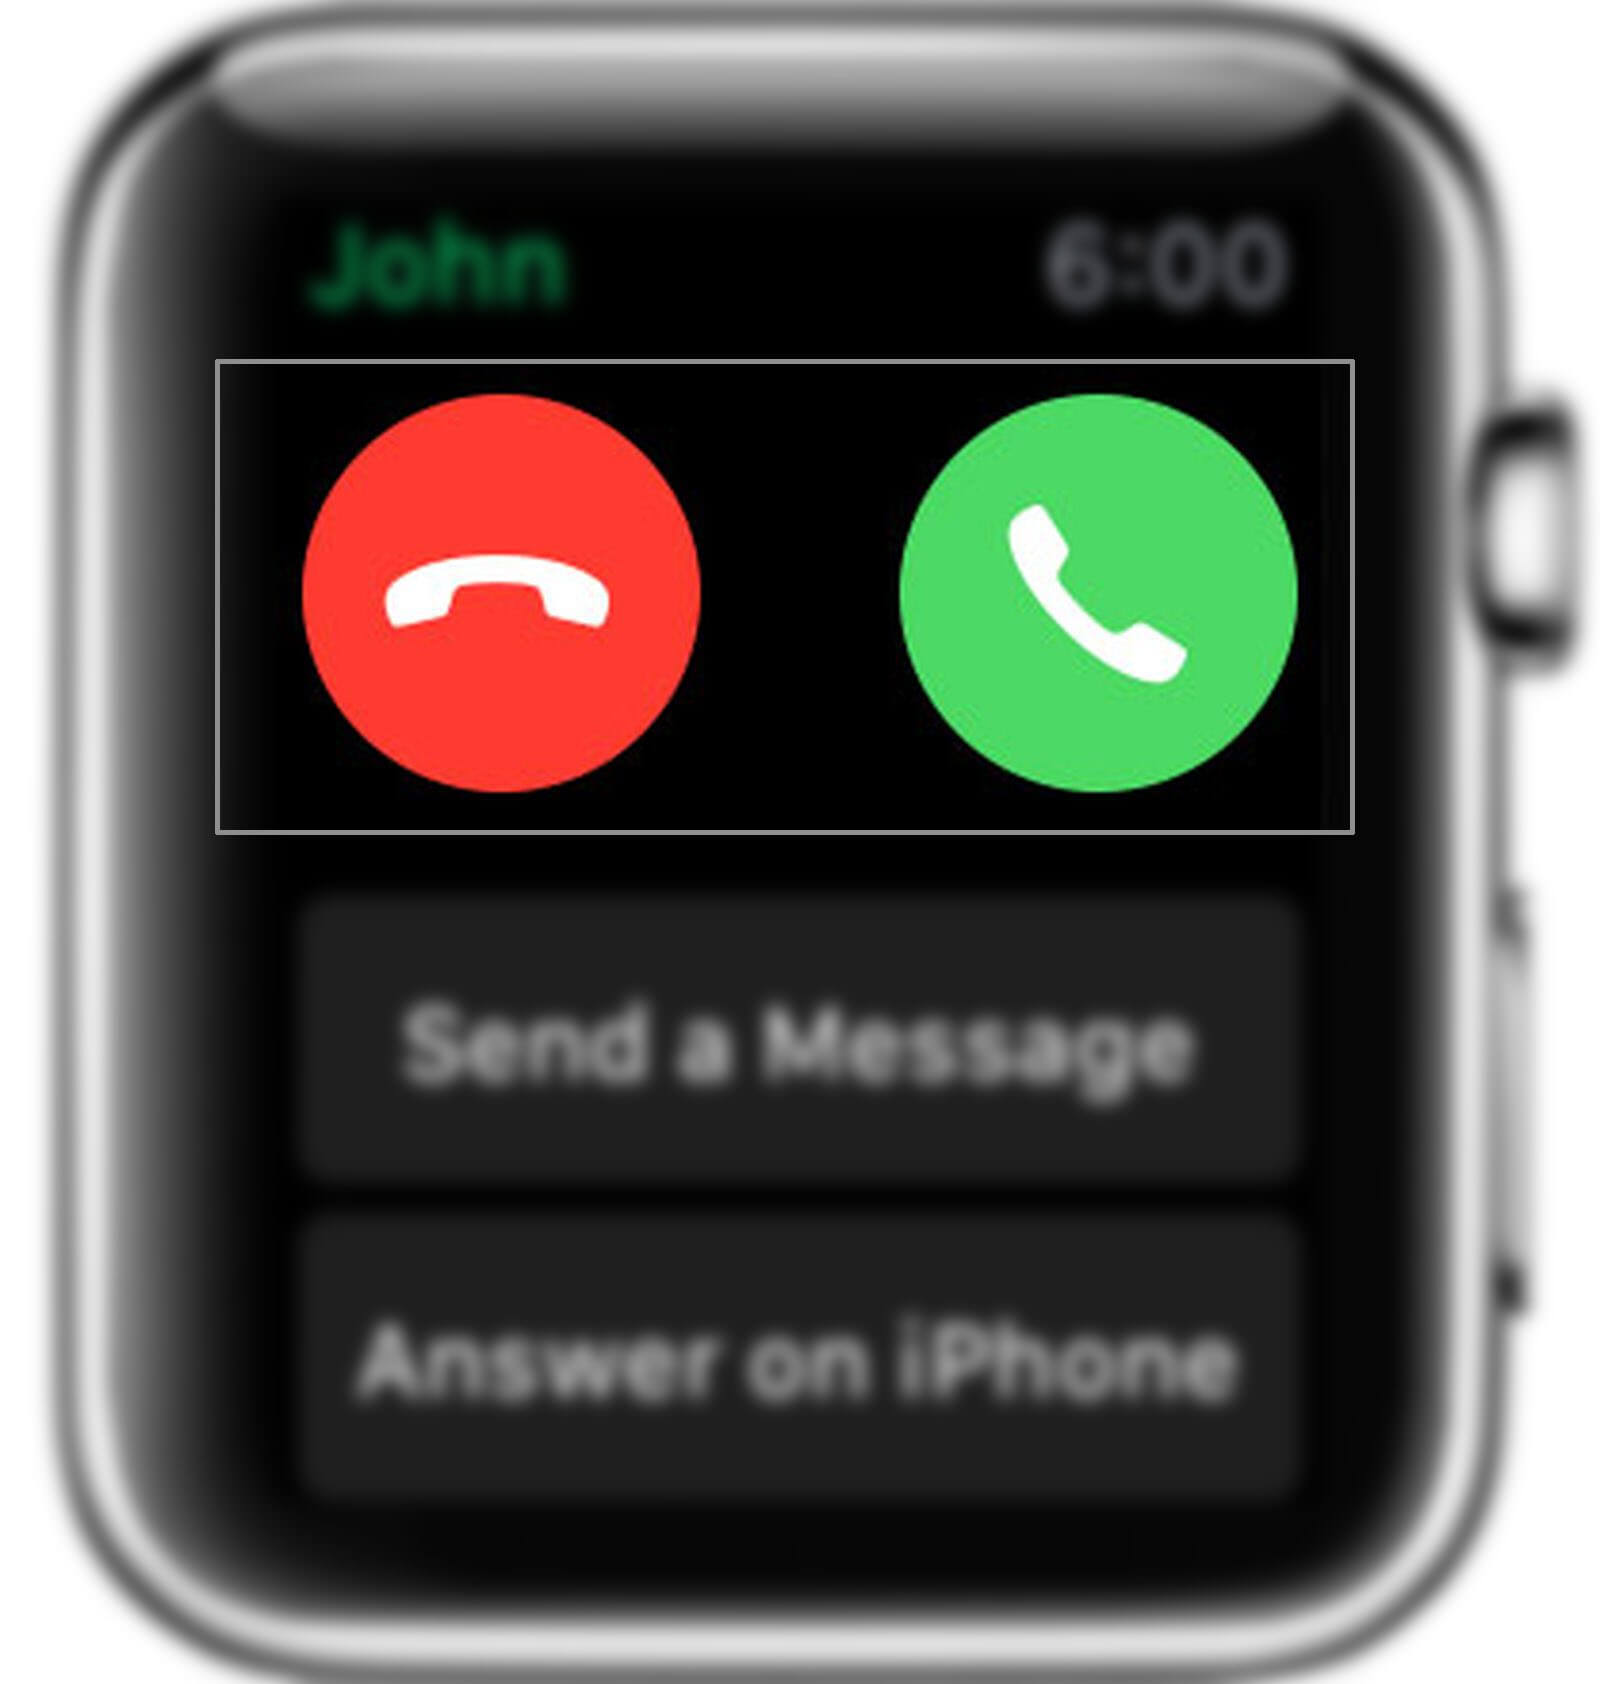 Apple Watch Calls Not Working